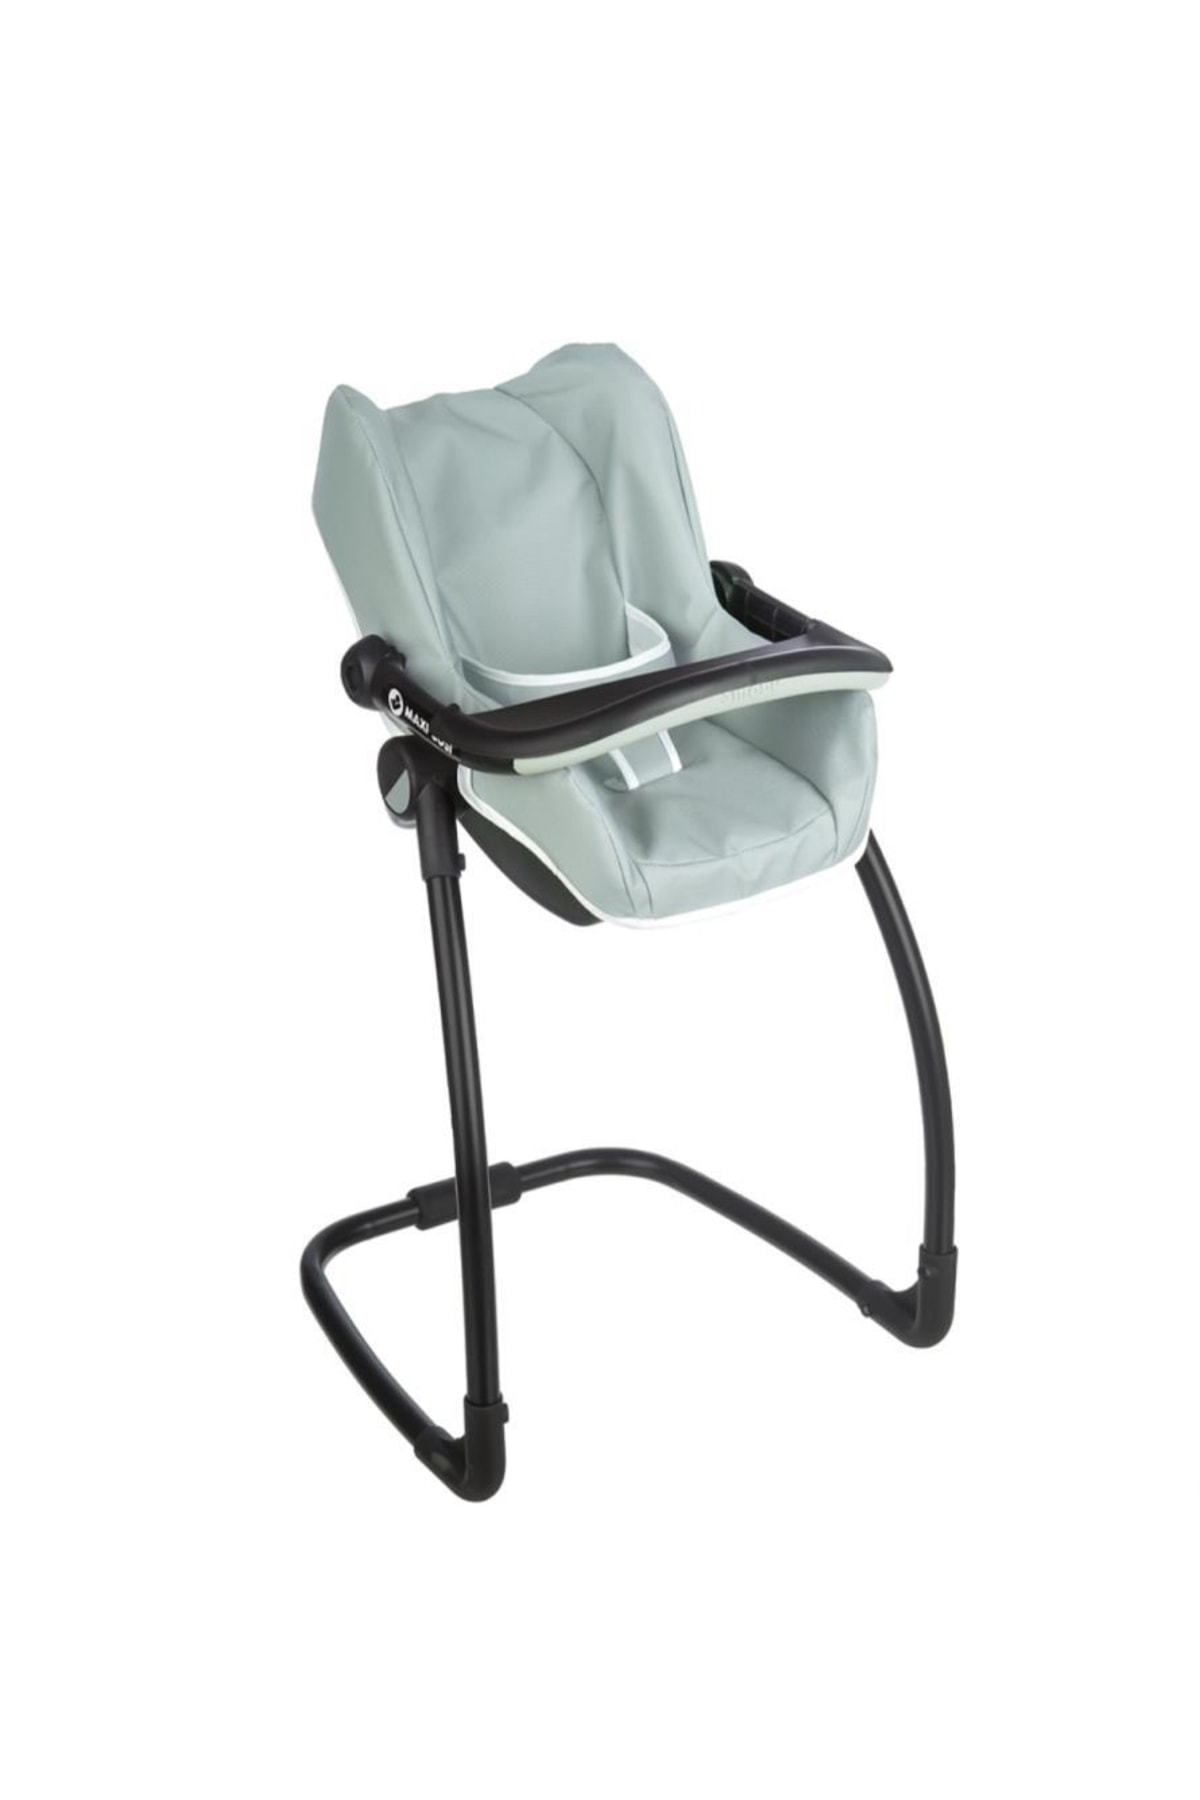 MAXİ-COSİ Smoby Oyuncak Bebek Mama Sandalyesi Puset Ve Salıncak 240239